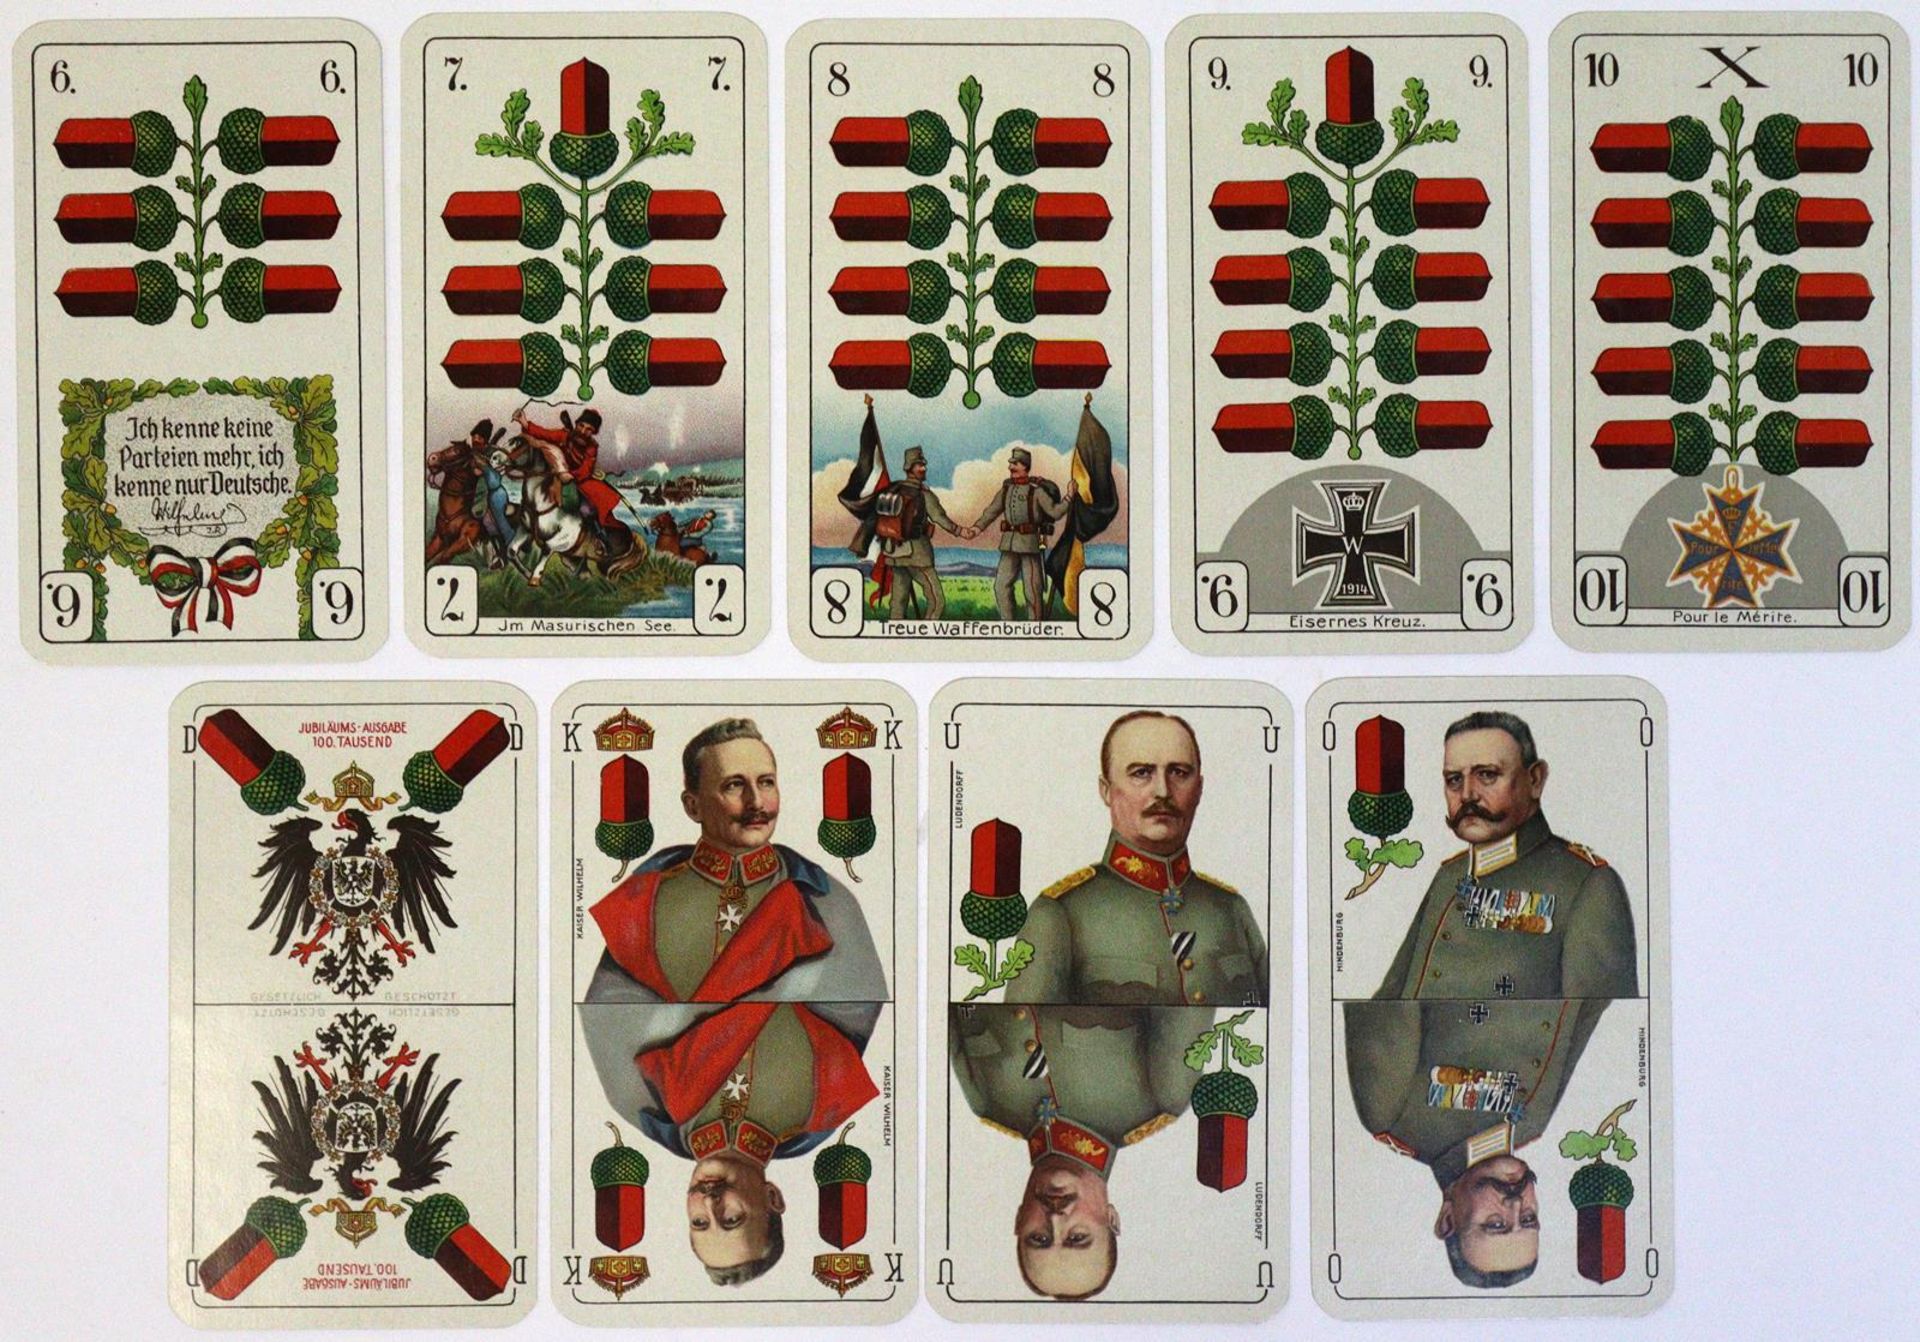 Deutsche Kriegs-Spielkarte. - Image 4 of 7